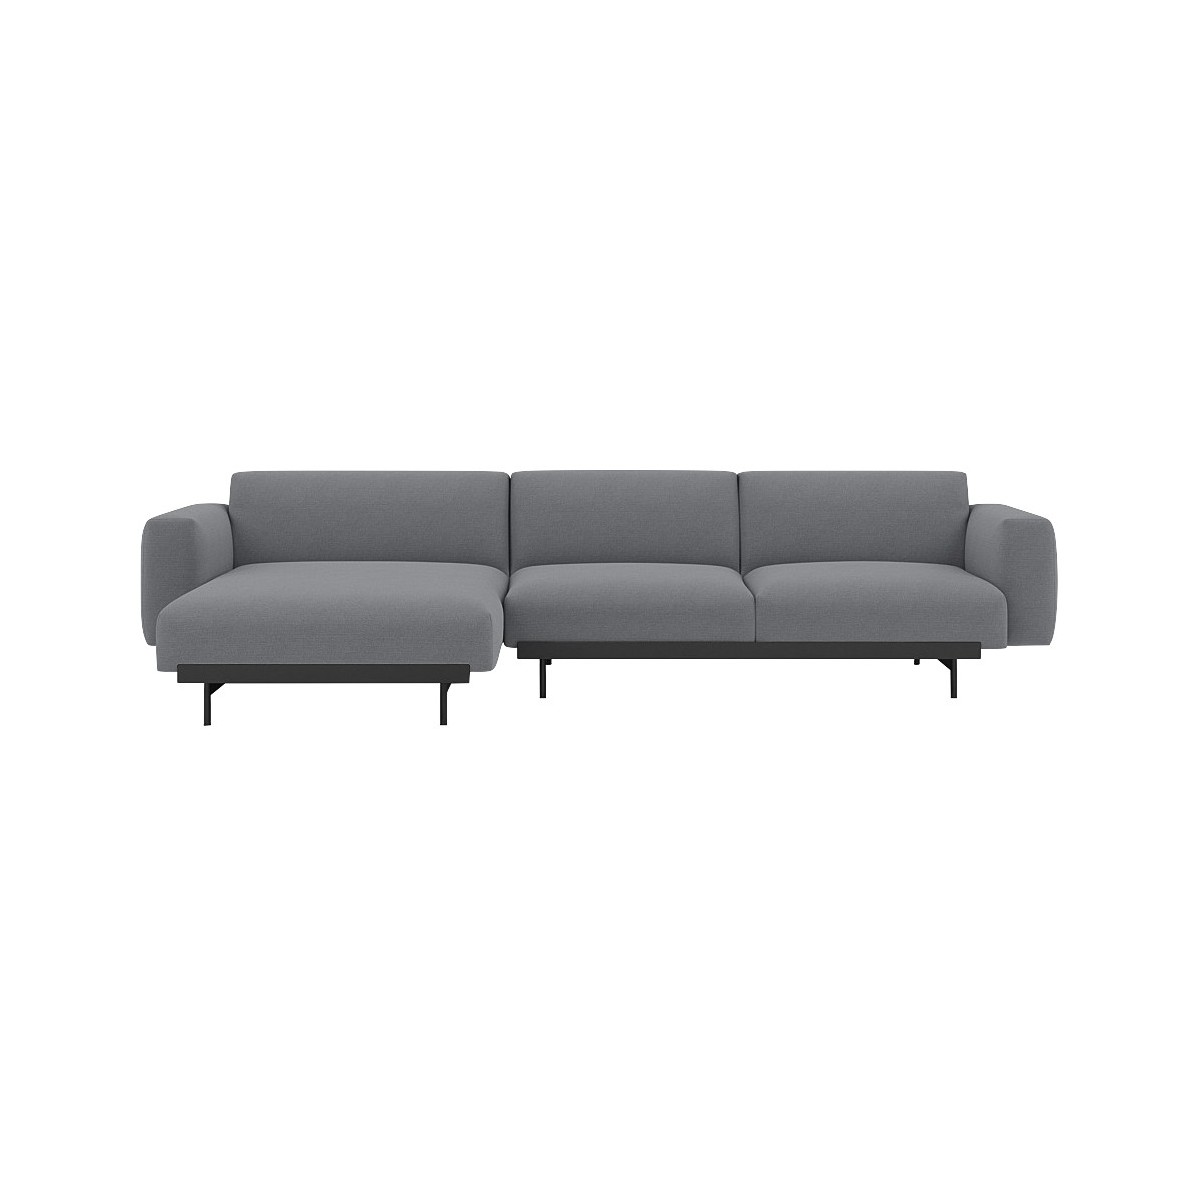 Ocean 80 / black – In Situ 3-seater sofa / configuration 7 – 297 x 169 cm